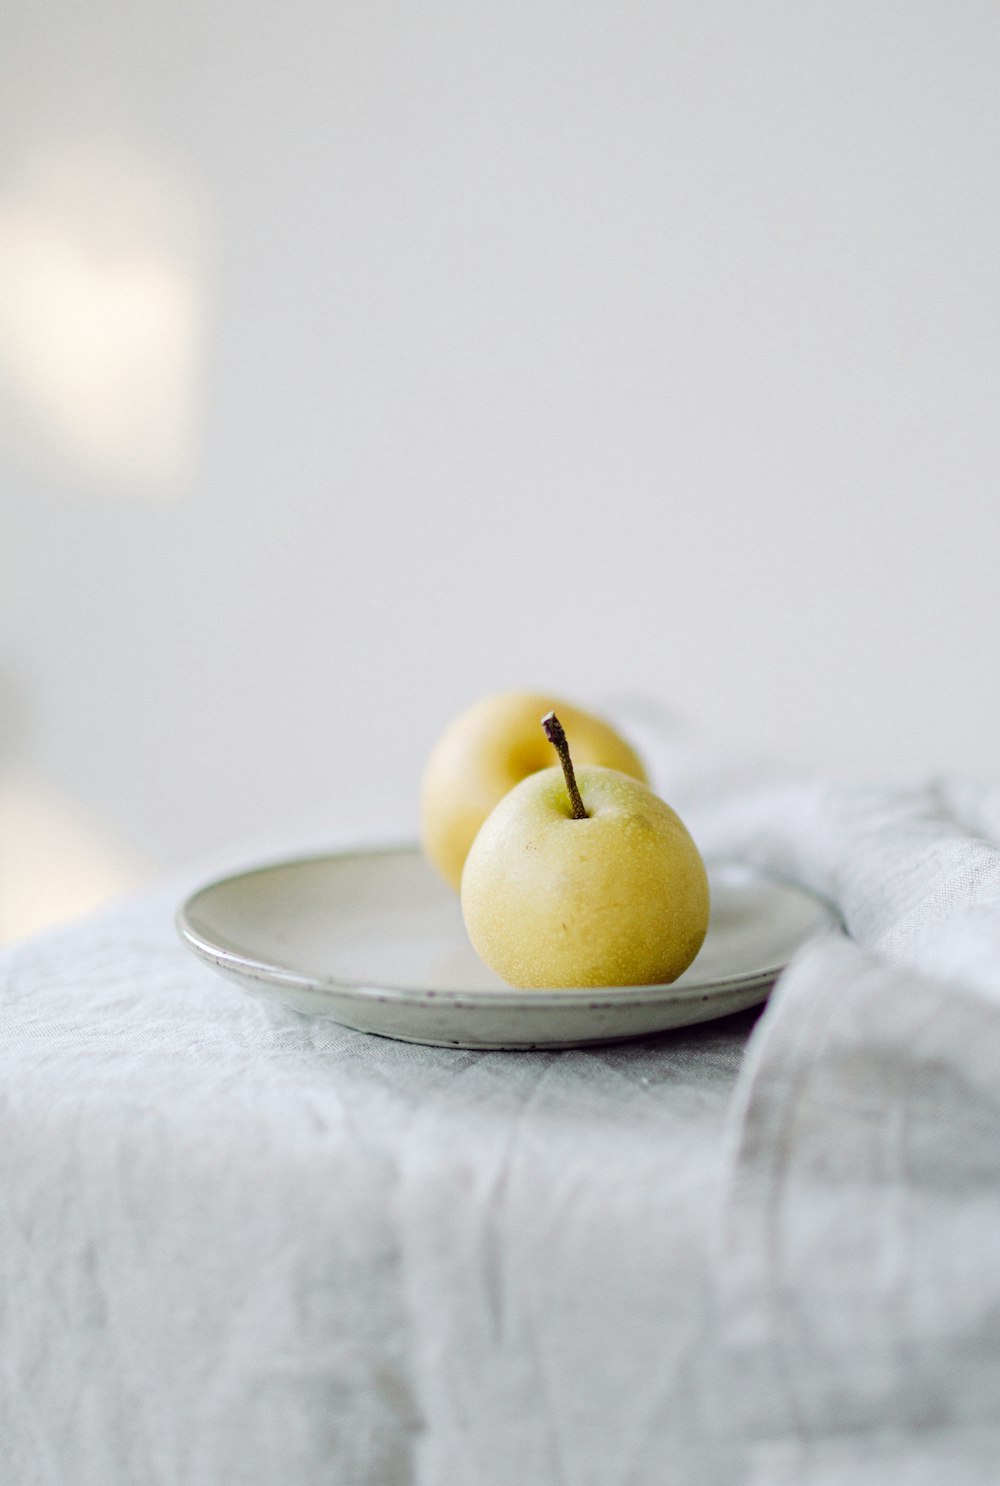 テーブルの上の皿の上に座っている2つのリンゴ